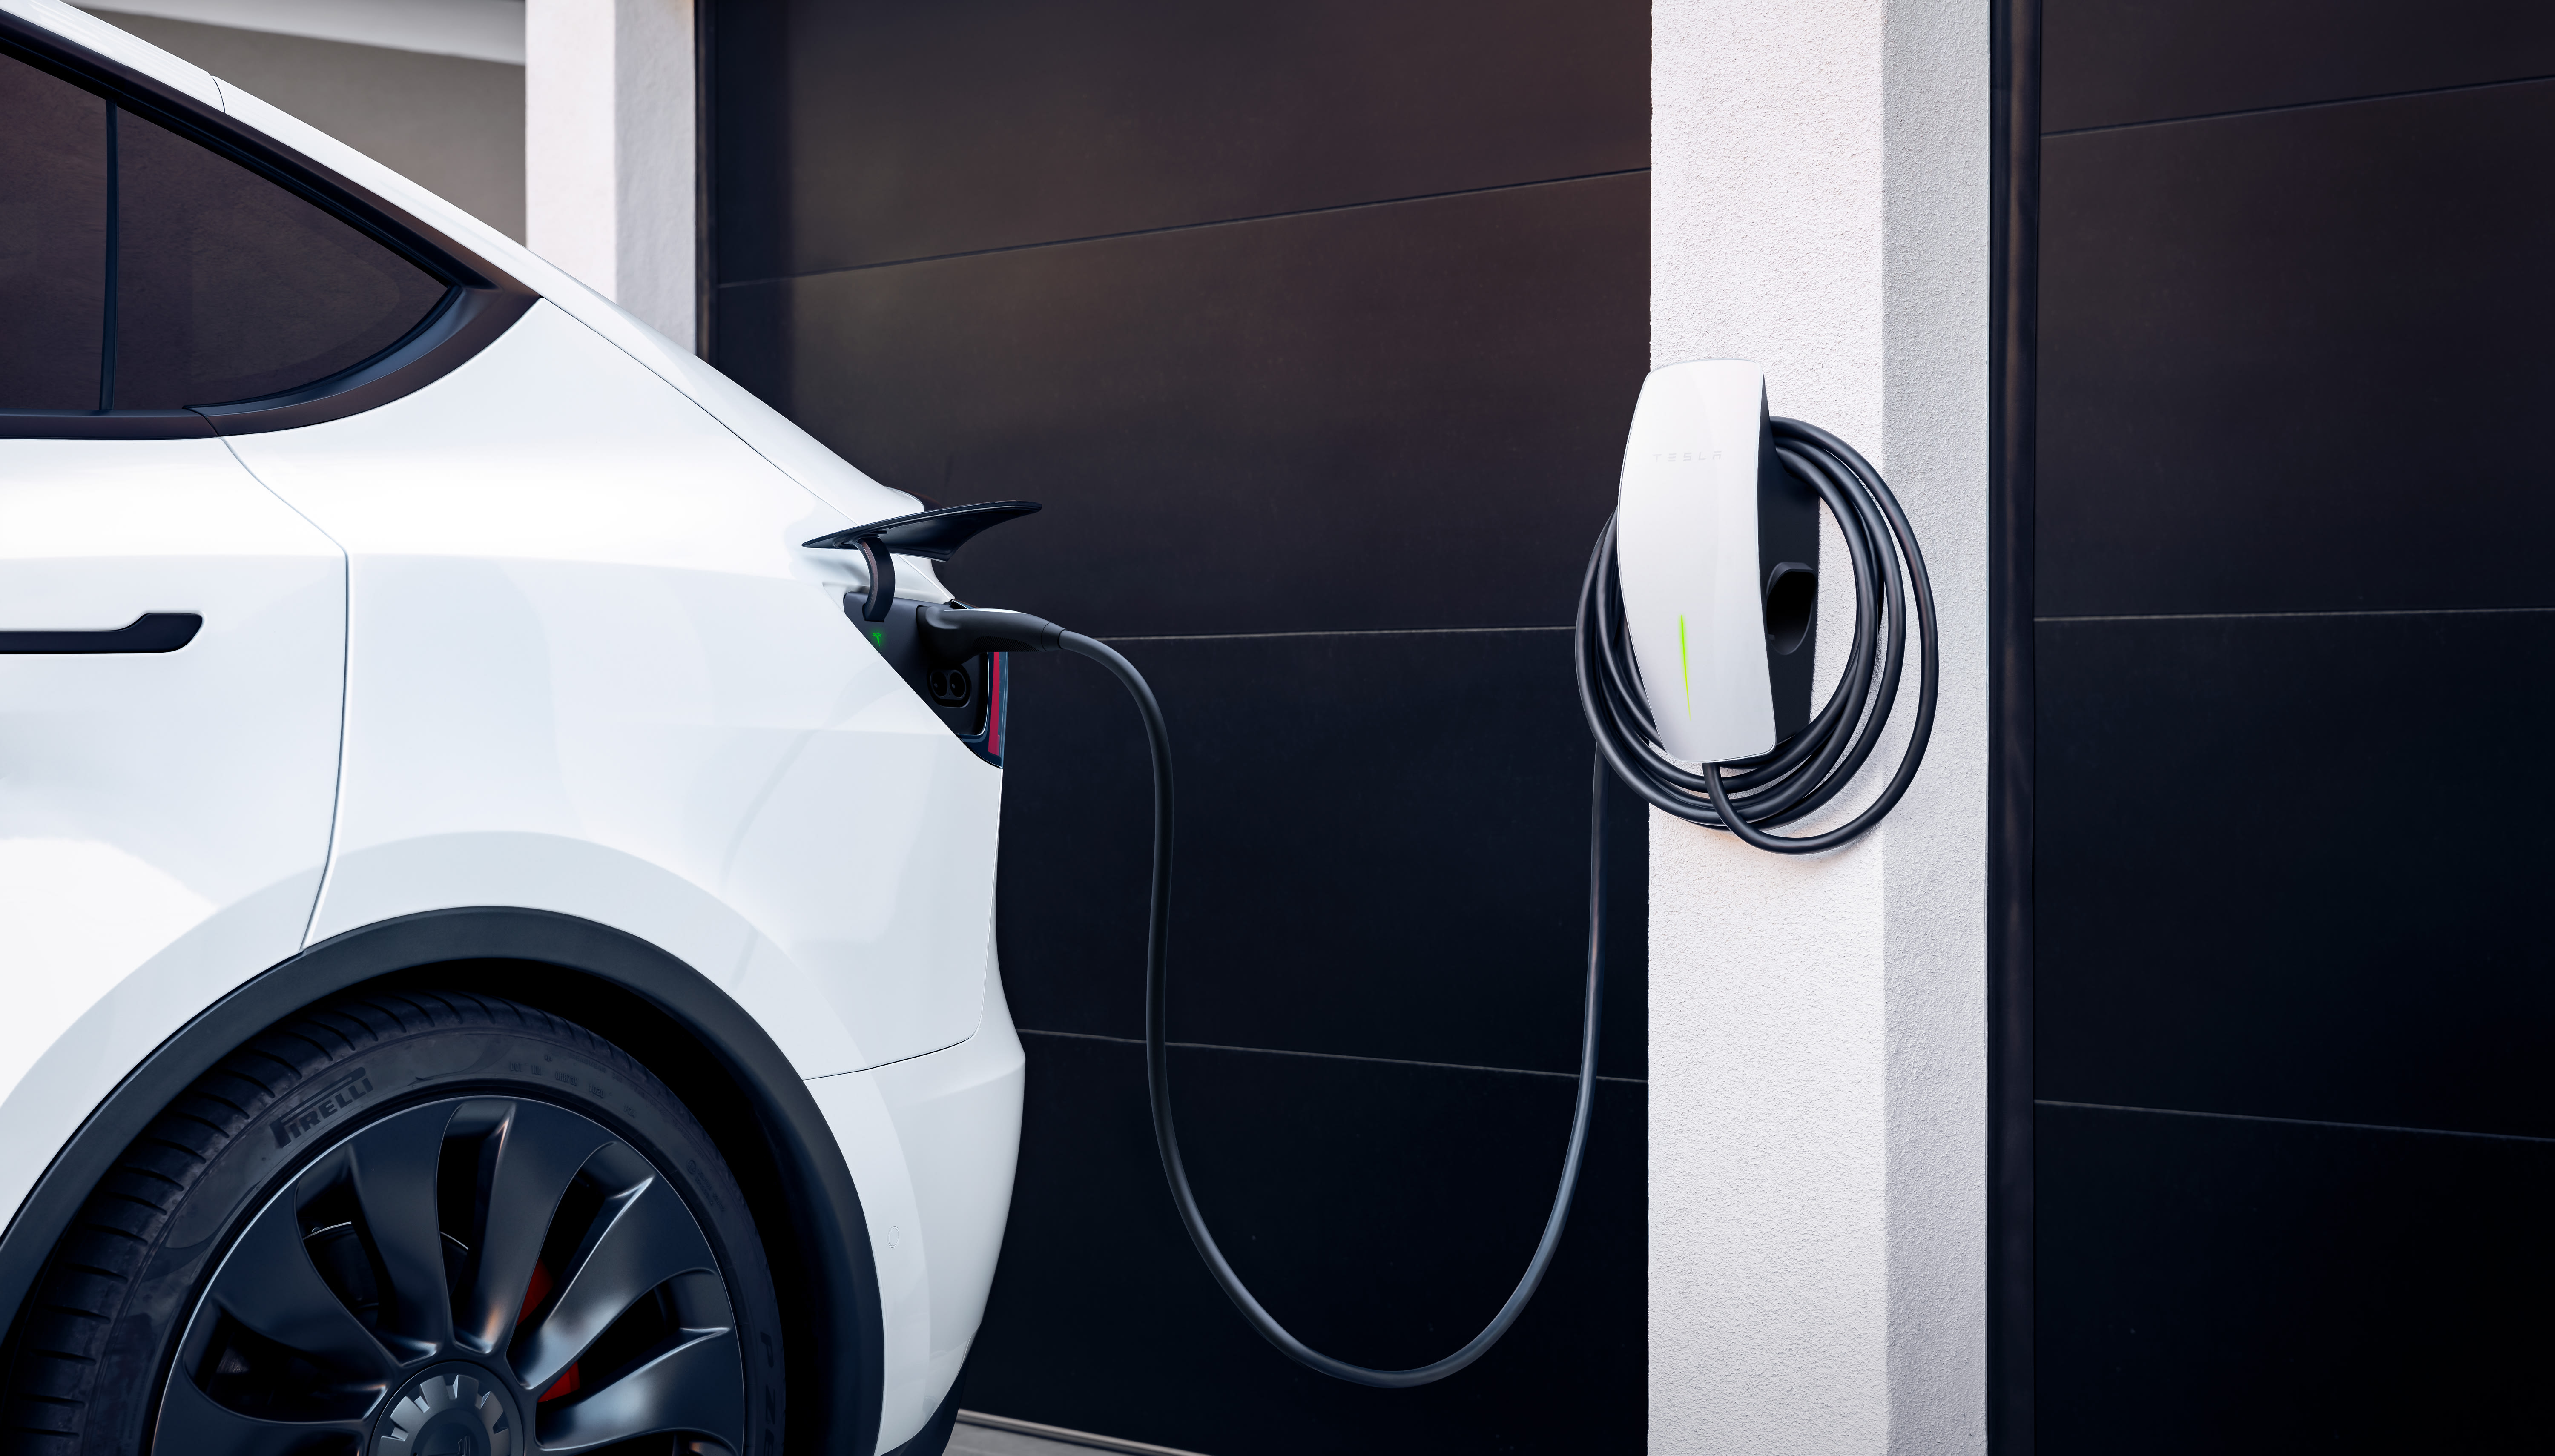 Racional Formación postura La tienda oficial de Tesla | Tesla